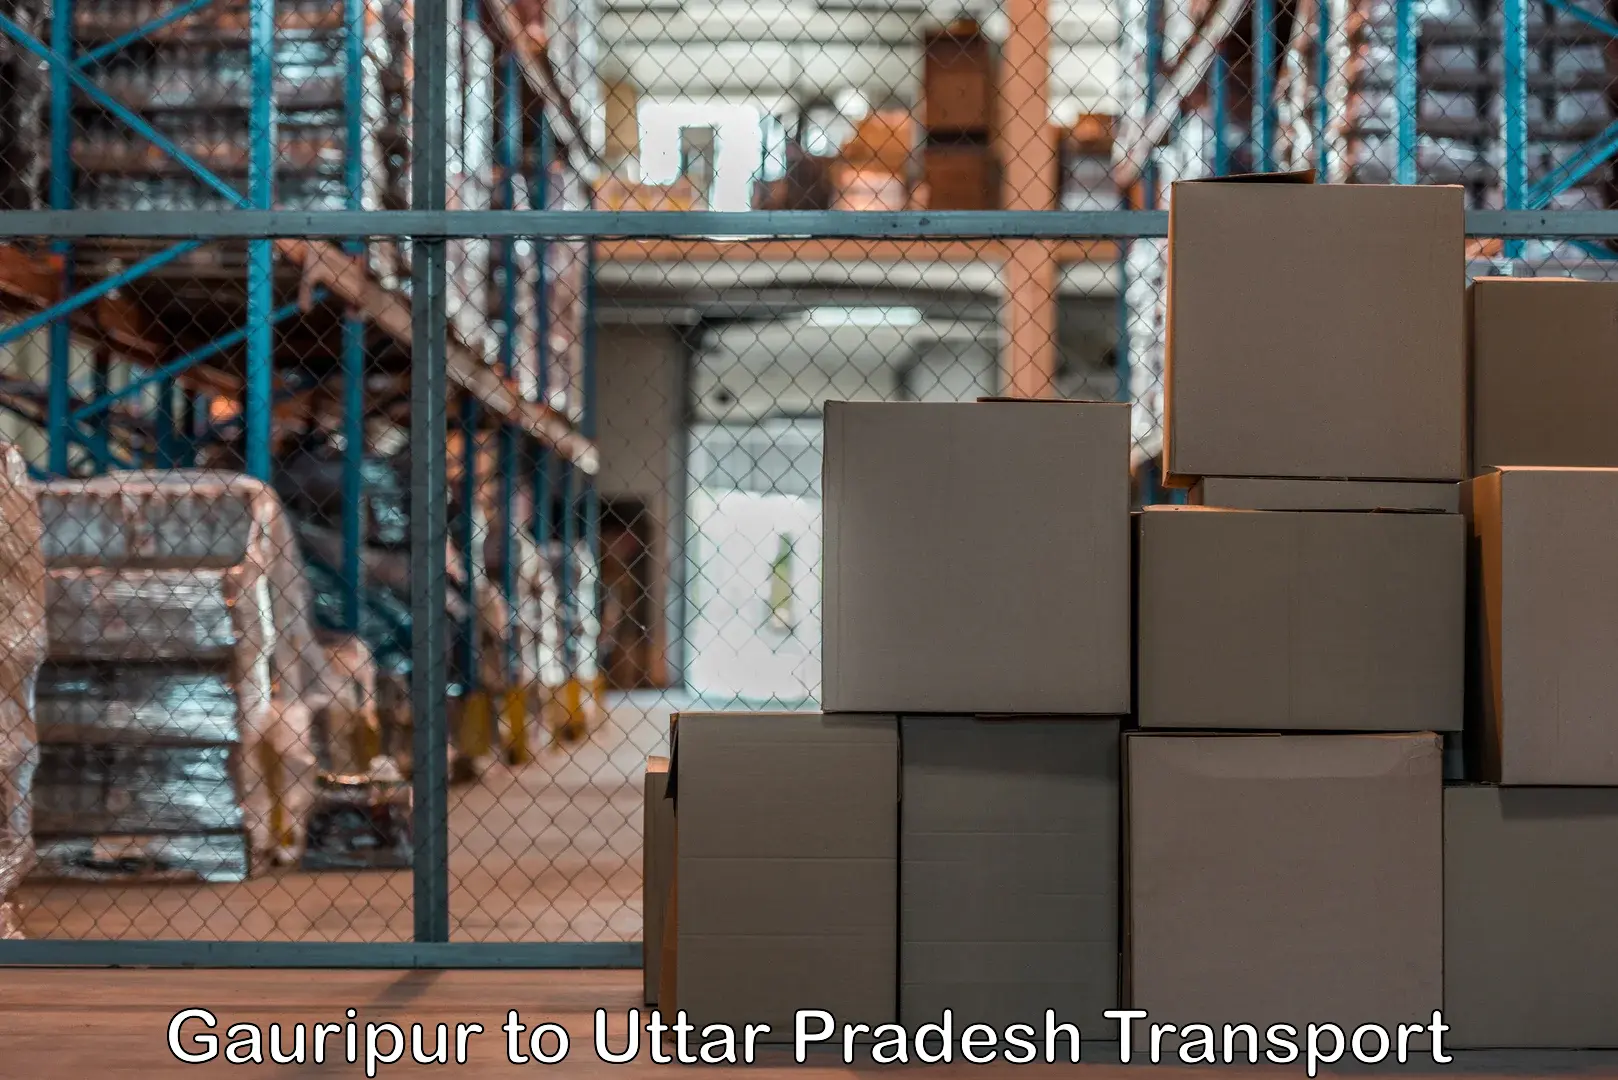 International cargo transportation services Gauripur to Bisalpur